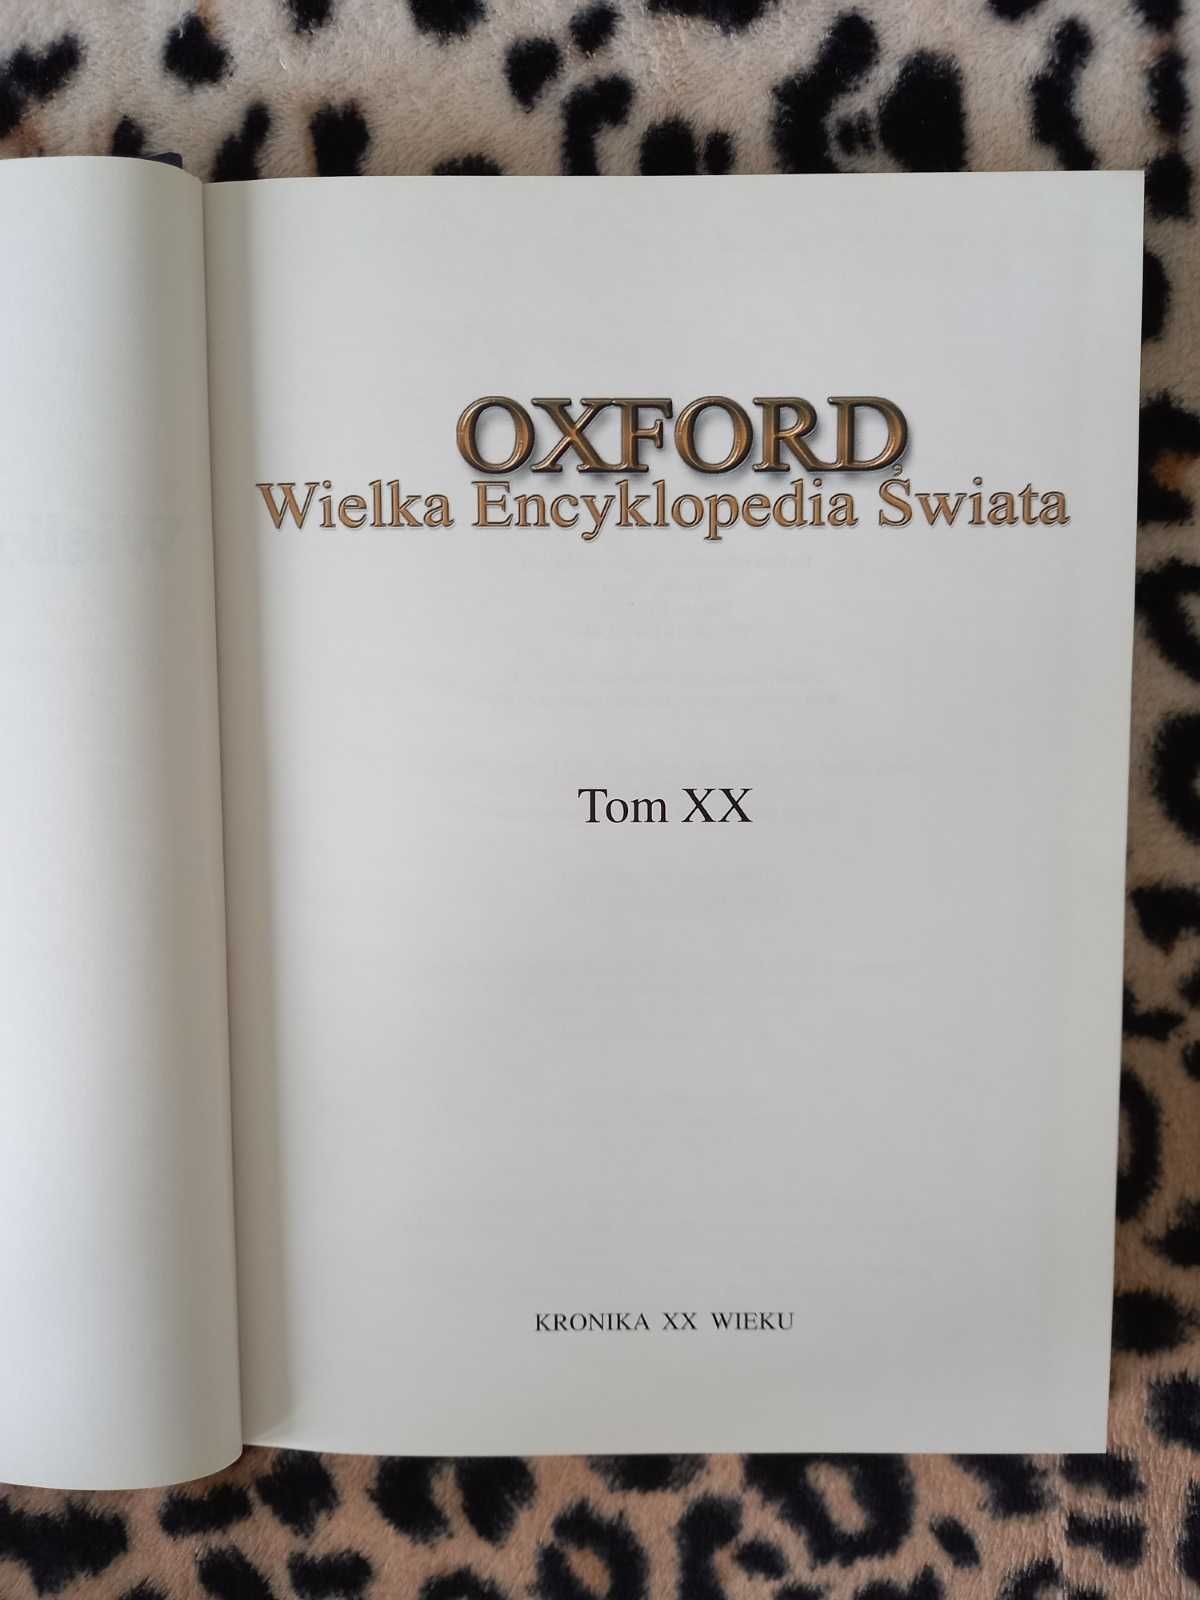 Kronika XX Wieku (wyd. Oxford)